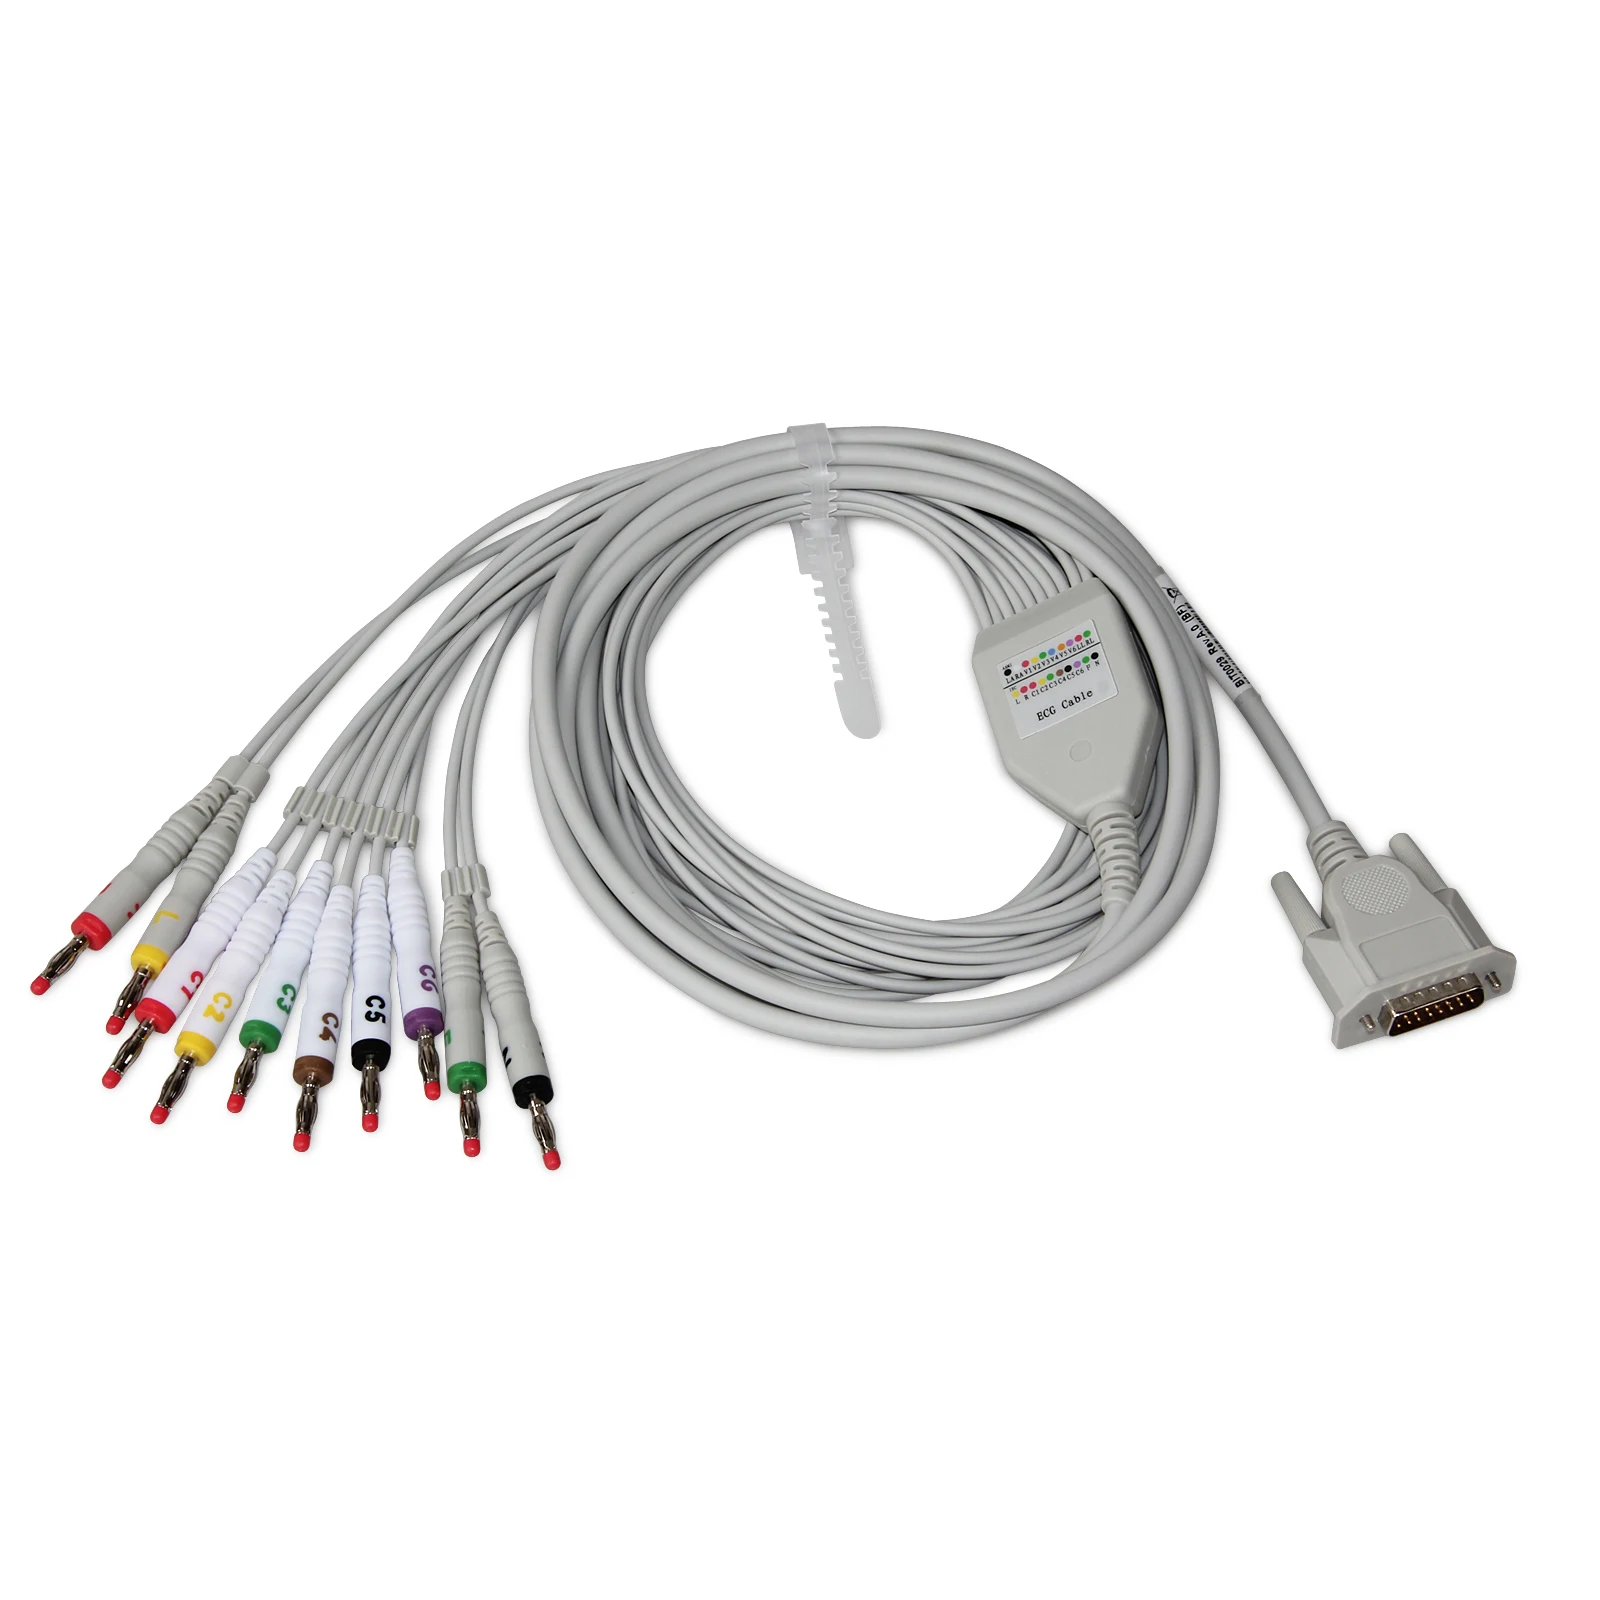 12-проводной ЭКГ-кабель типа A для электрокардиографа CONTC ECG100G/300G/600G/1200G |